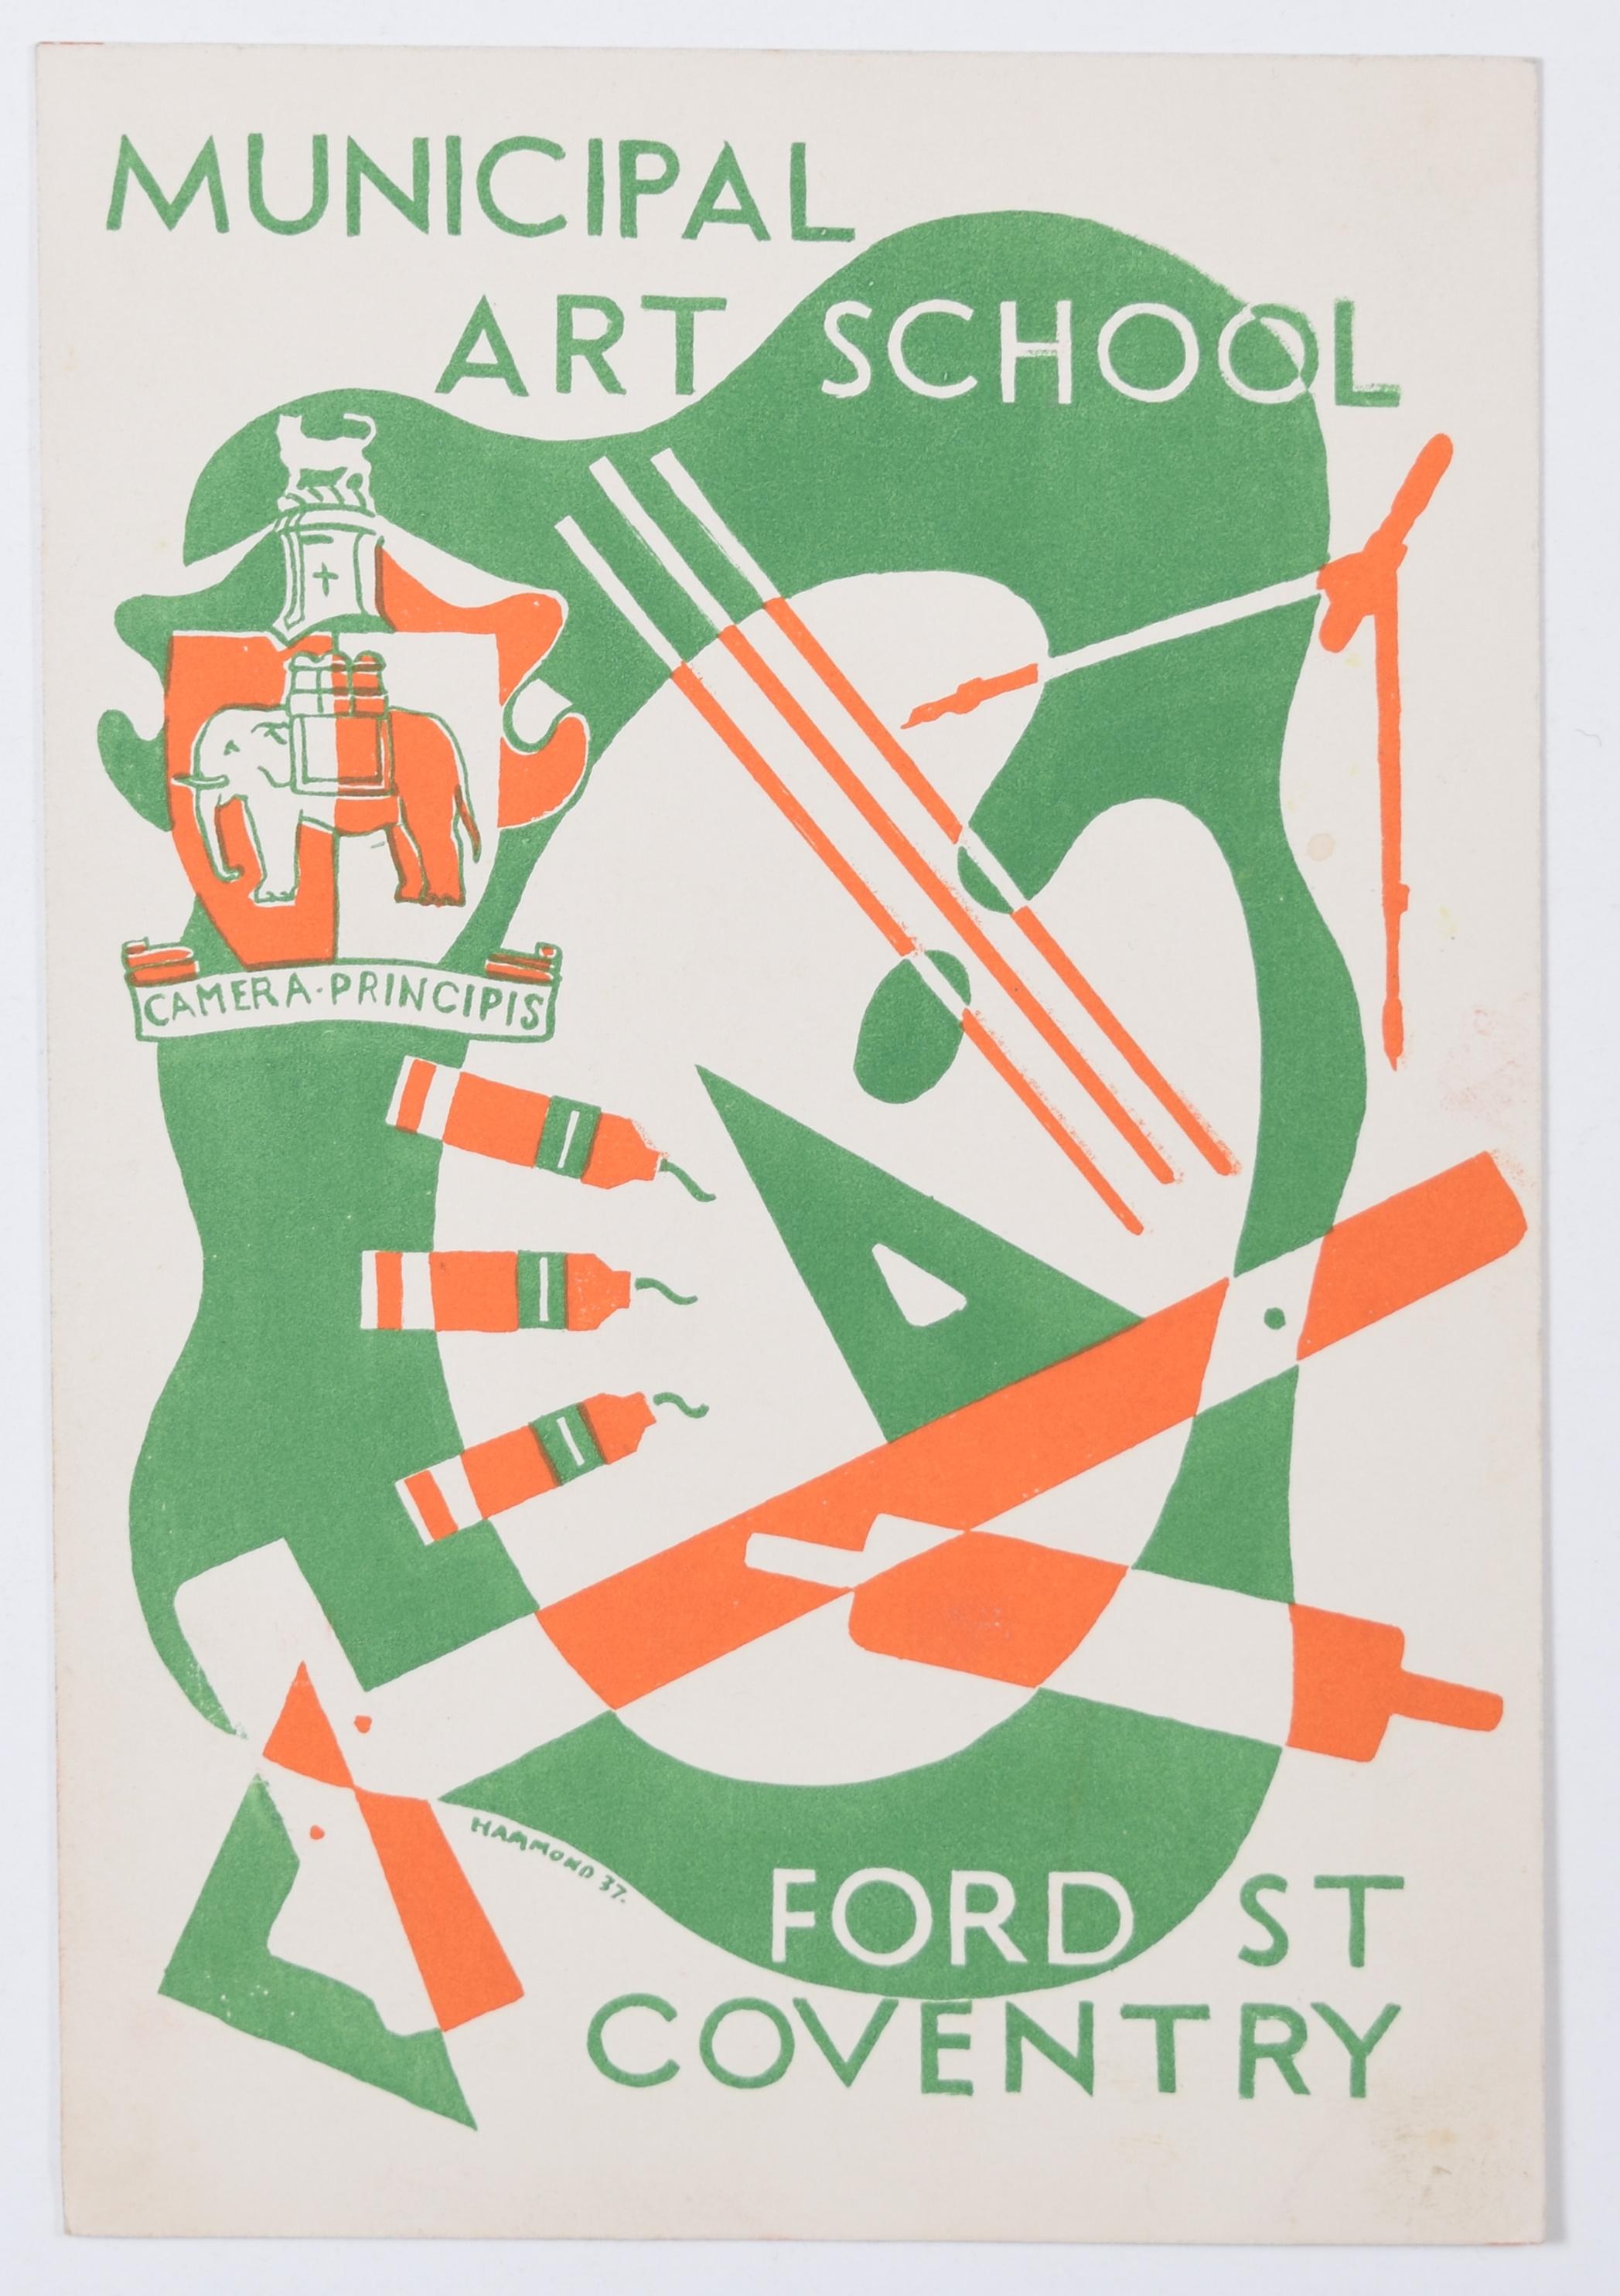 Hammond (Brite, um 1930)
Design für die Broschüre der Städtischen Kunstschule
21.5x18 cm
Lithographie direkt auf Stein gezeichnet, 1937

Leider ist nichts über das Leben des Künstlers dieser Serie schöner Art-Déco-Designs bekannt, die wir